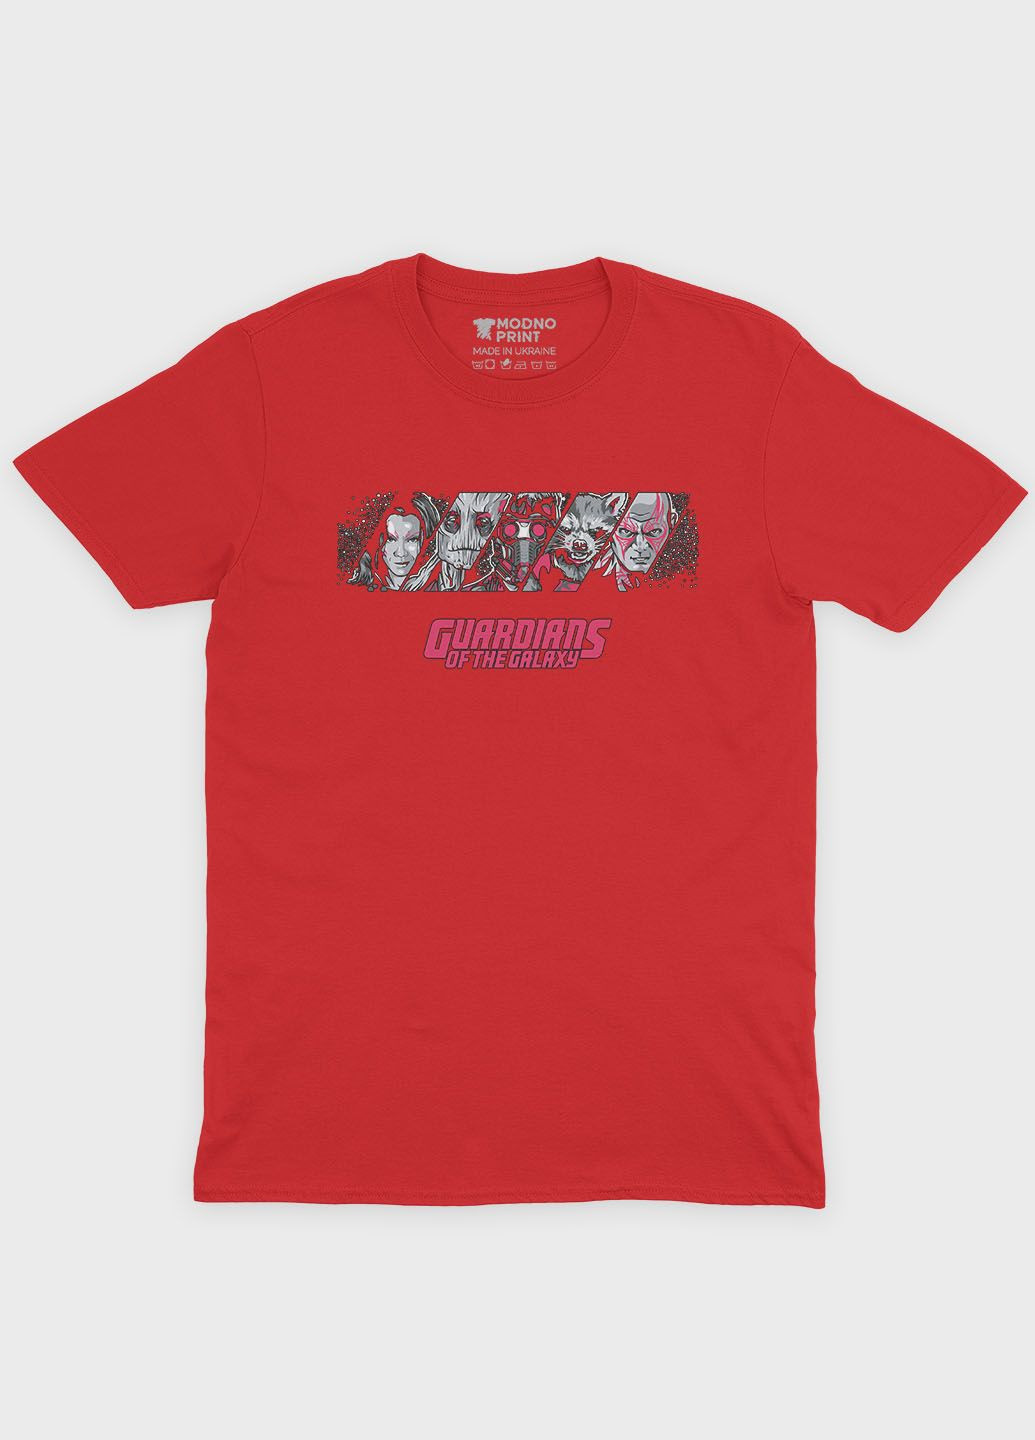 Красная демисезонная футболка для мальчика с принтом супергероев - стражи галактики (ts001-1-sre-006-017-013-b) Modno